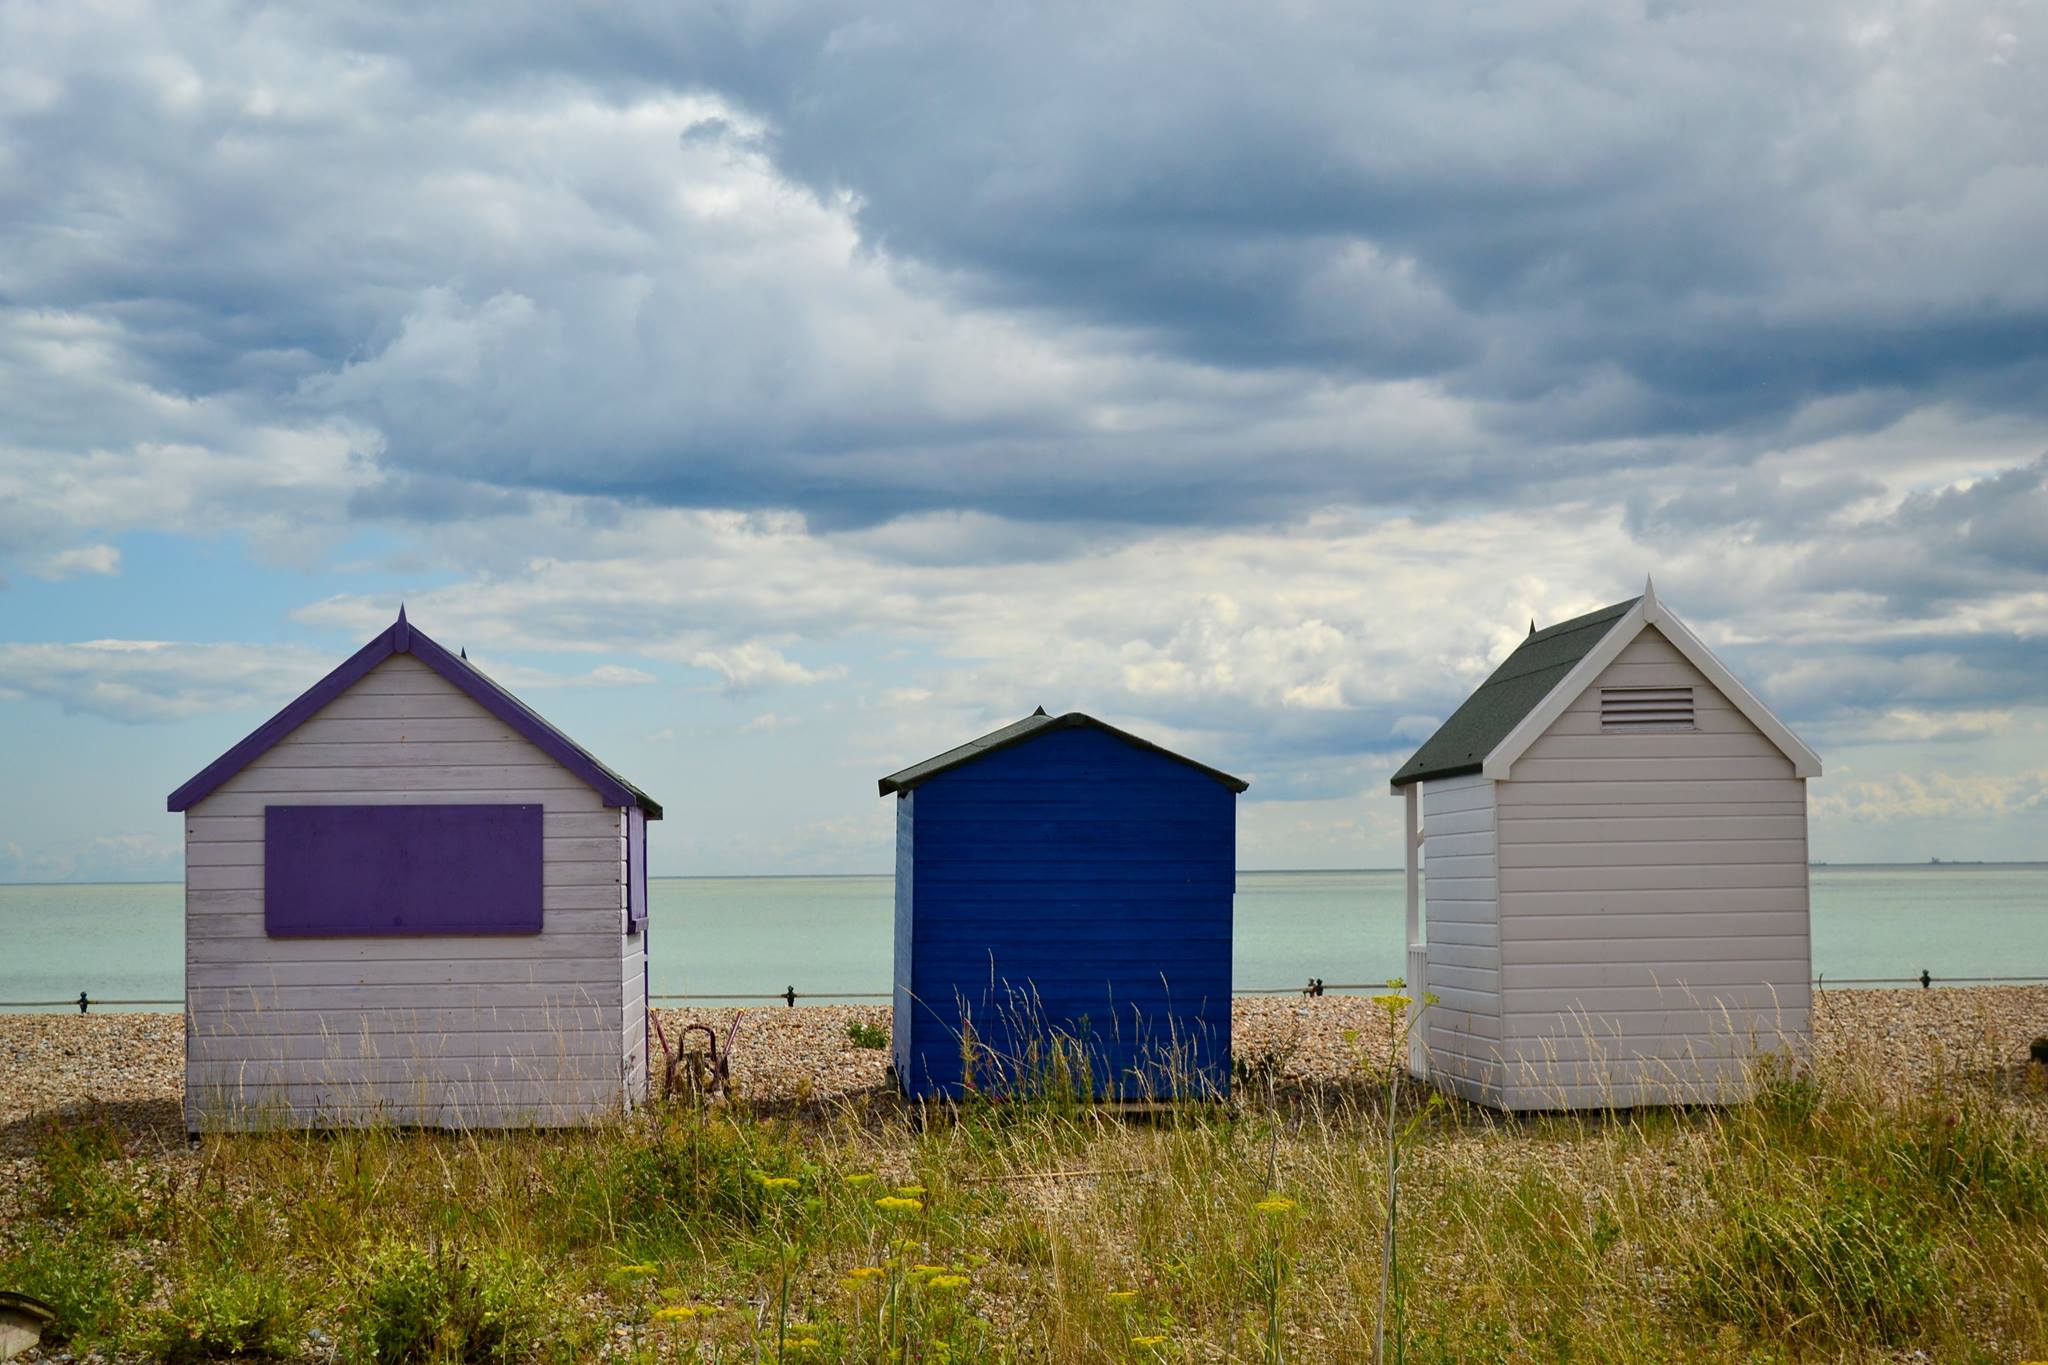 Beach huts of Deal, Kent.